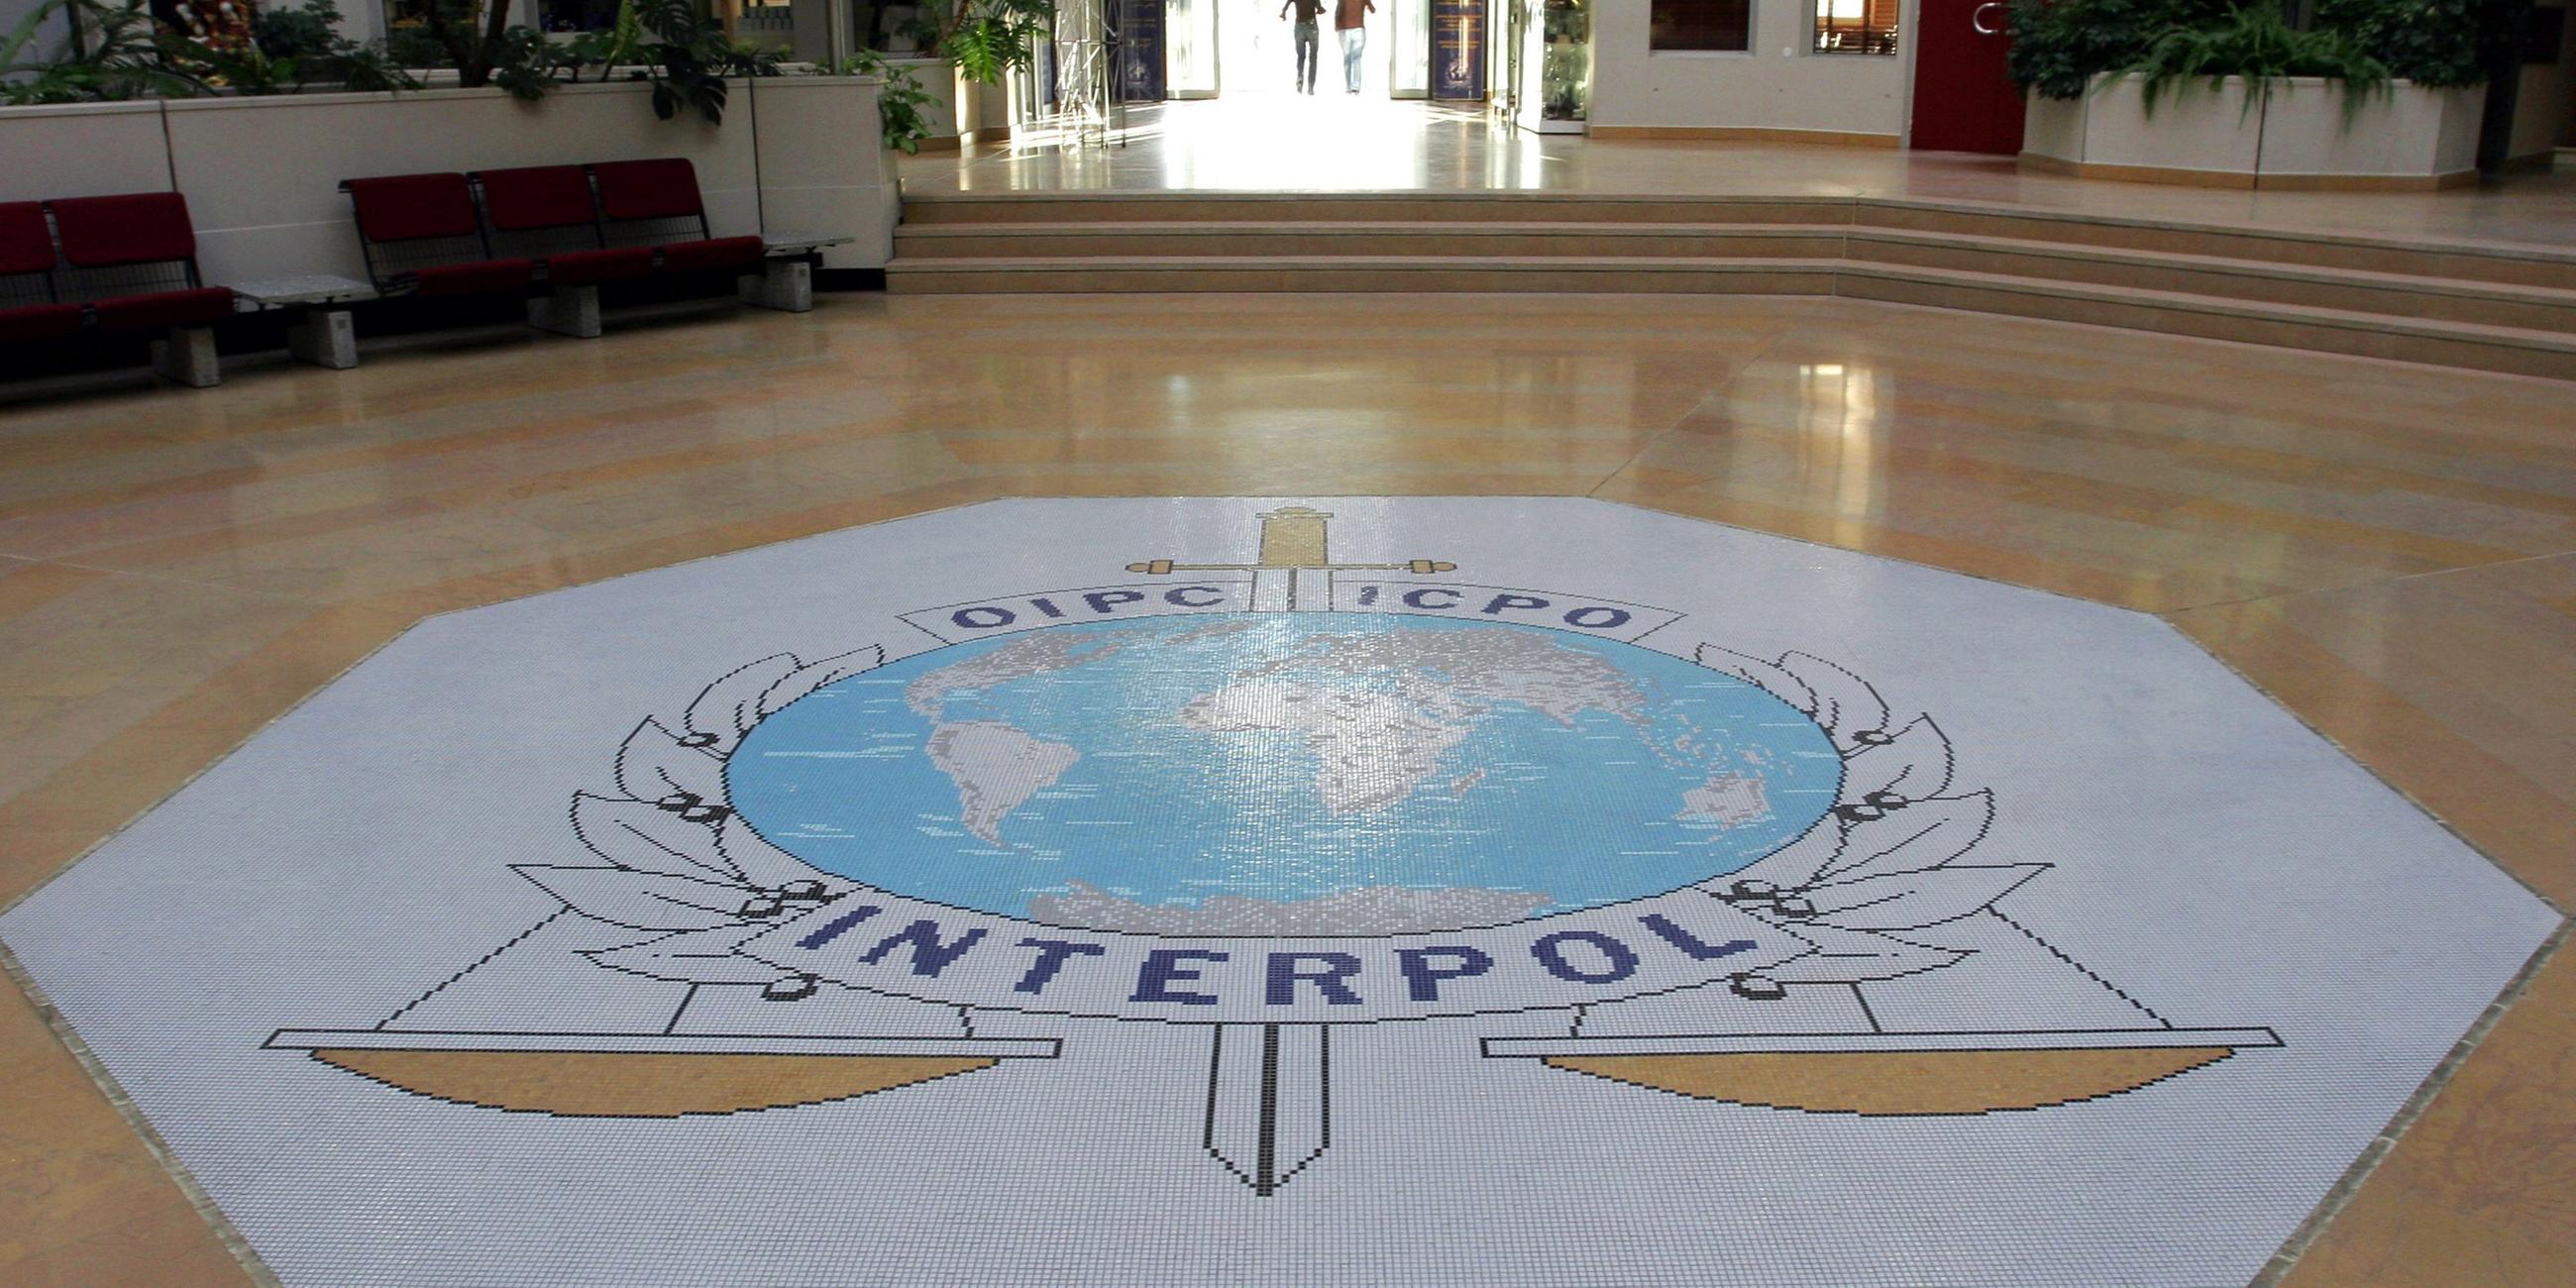 Interpol-Zentrale in Lyon